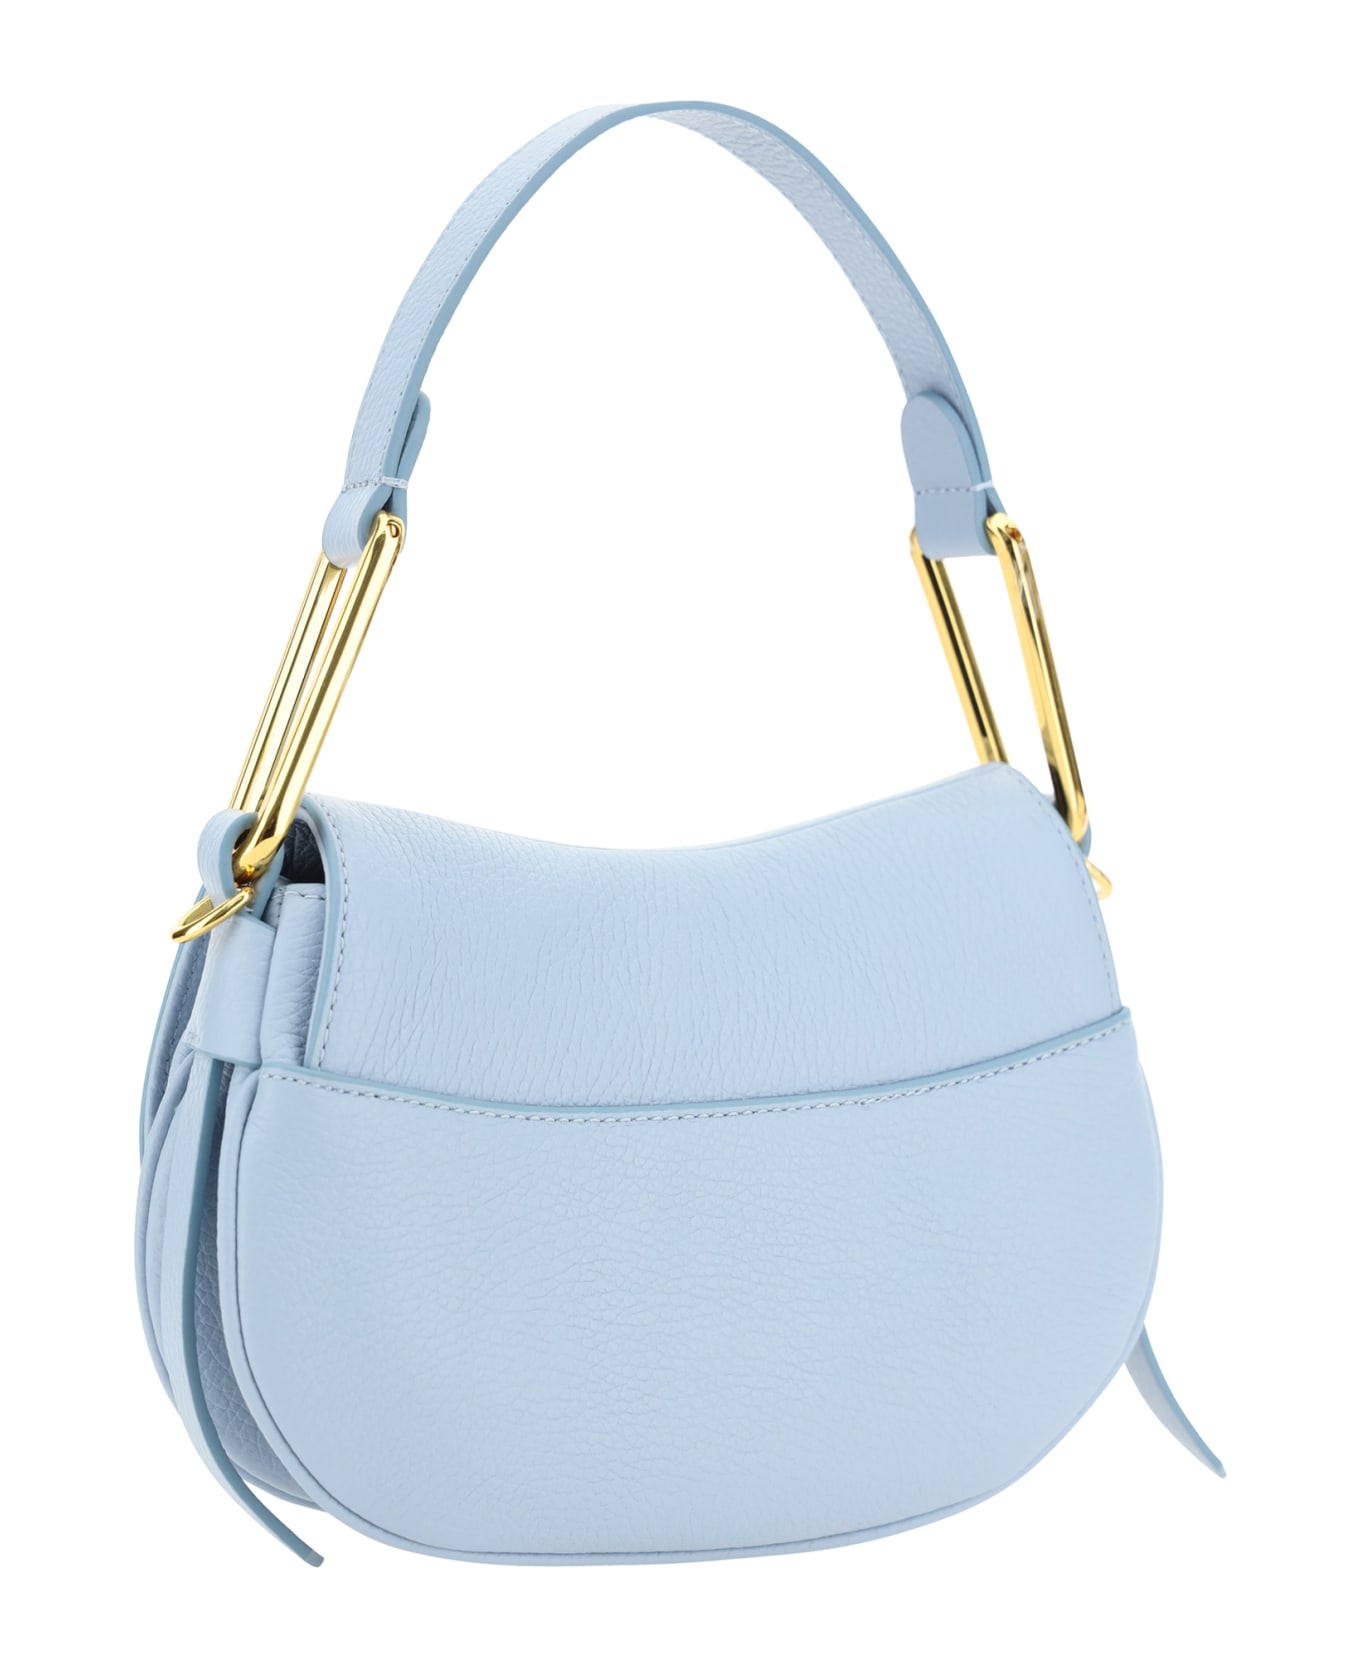 Coccinelle Maggie Shoulder Bag - Mist Blue